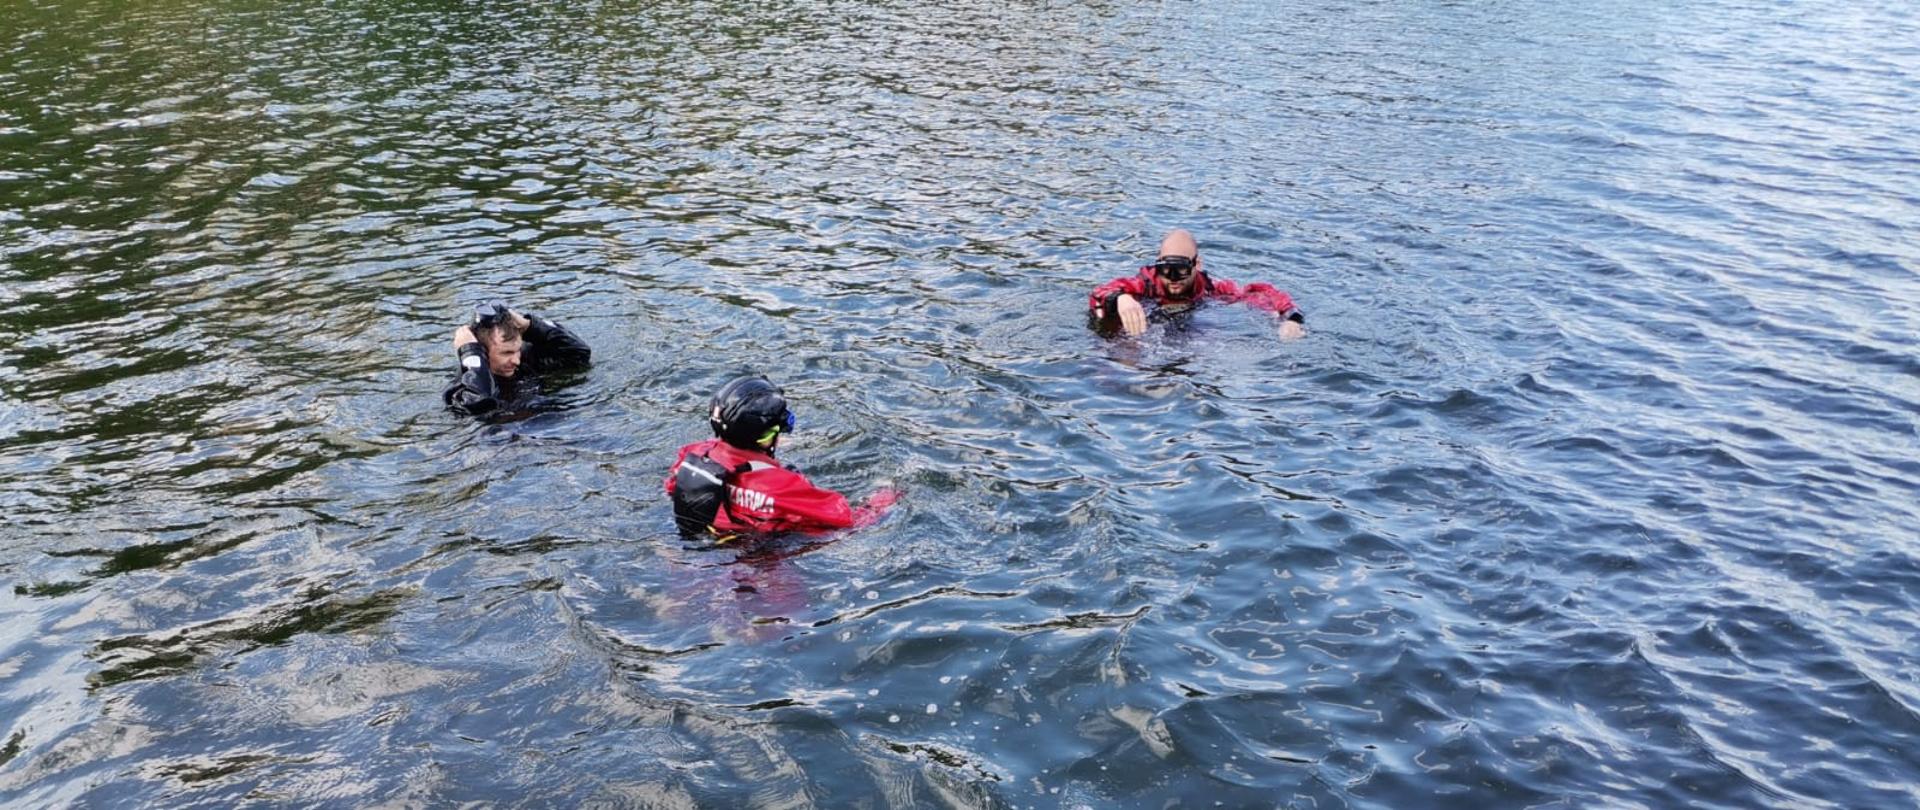 Trzech strażaków ubranych w ubrania do nurkowania zanurzonych w wodzie, na pierwszym planie na pomoście leży butla oraz pozostały sprzęt do nurkowania 